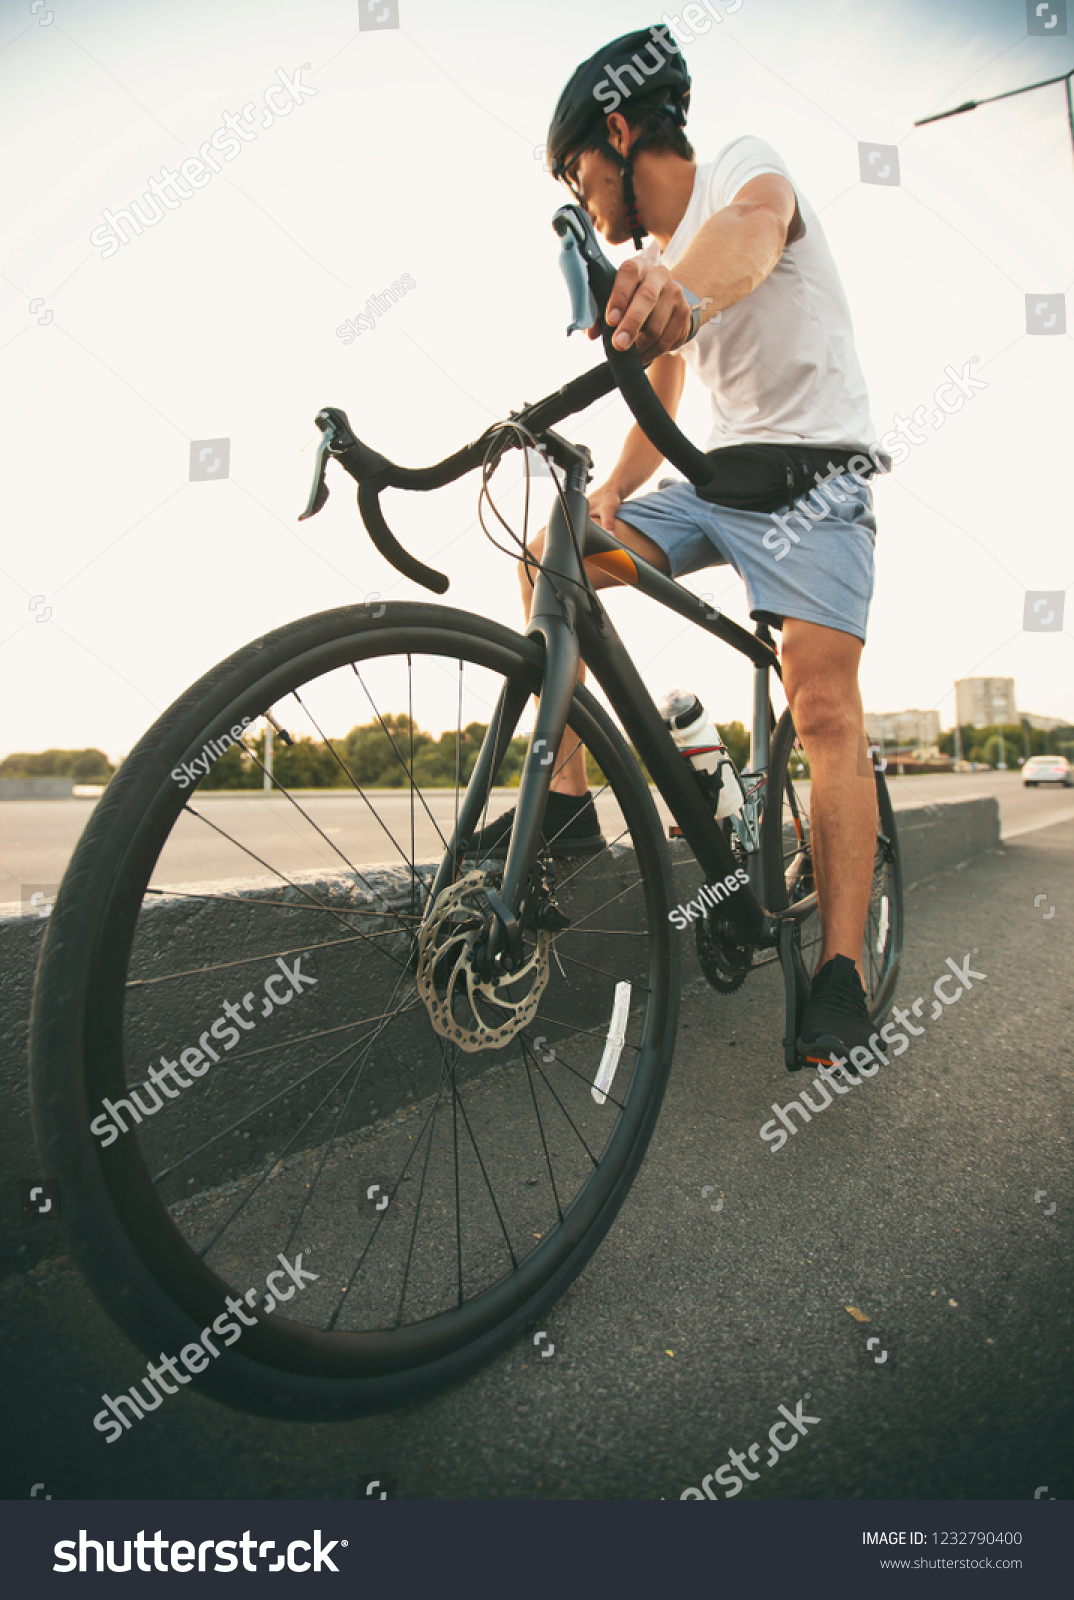 casual bike clothing